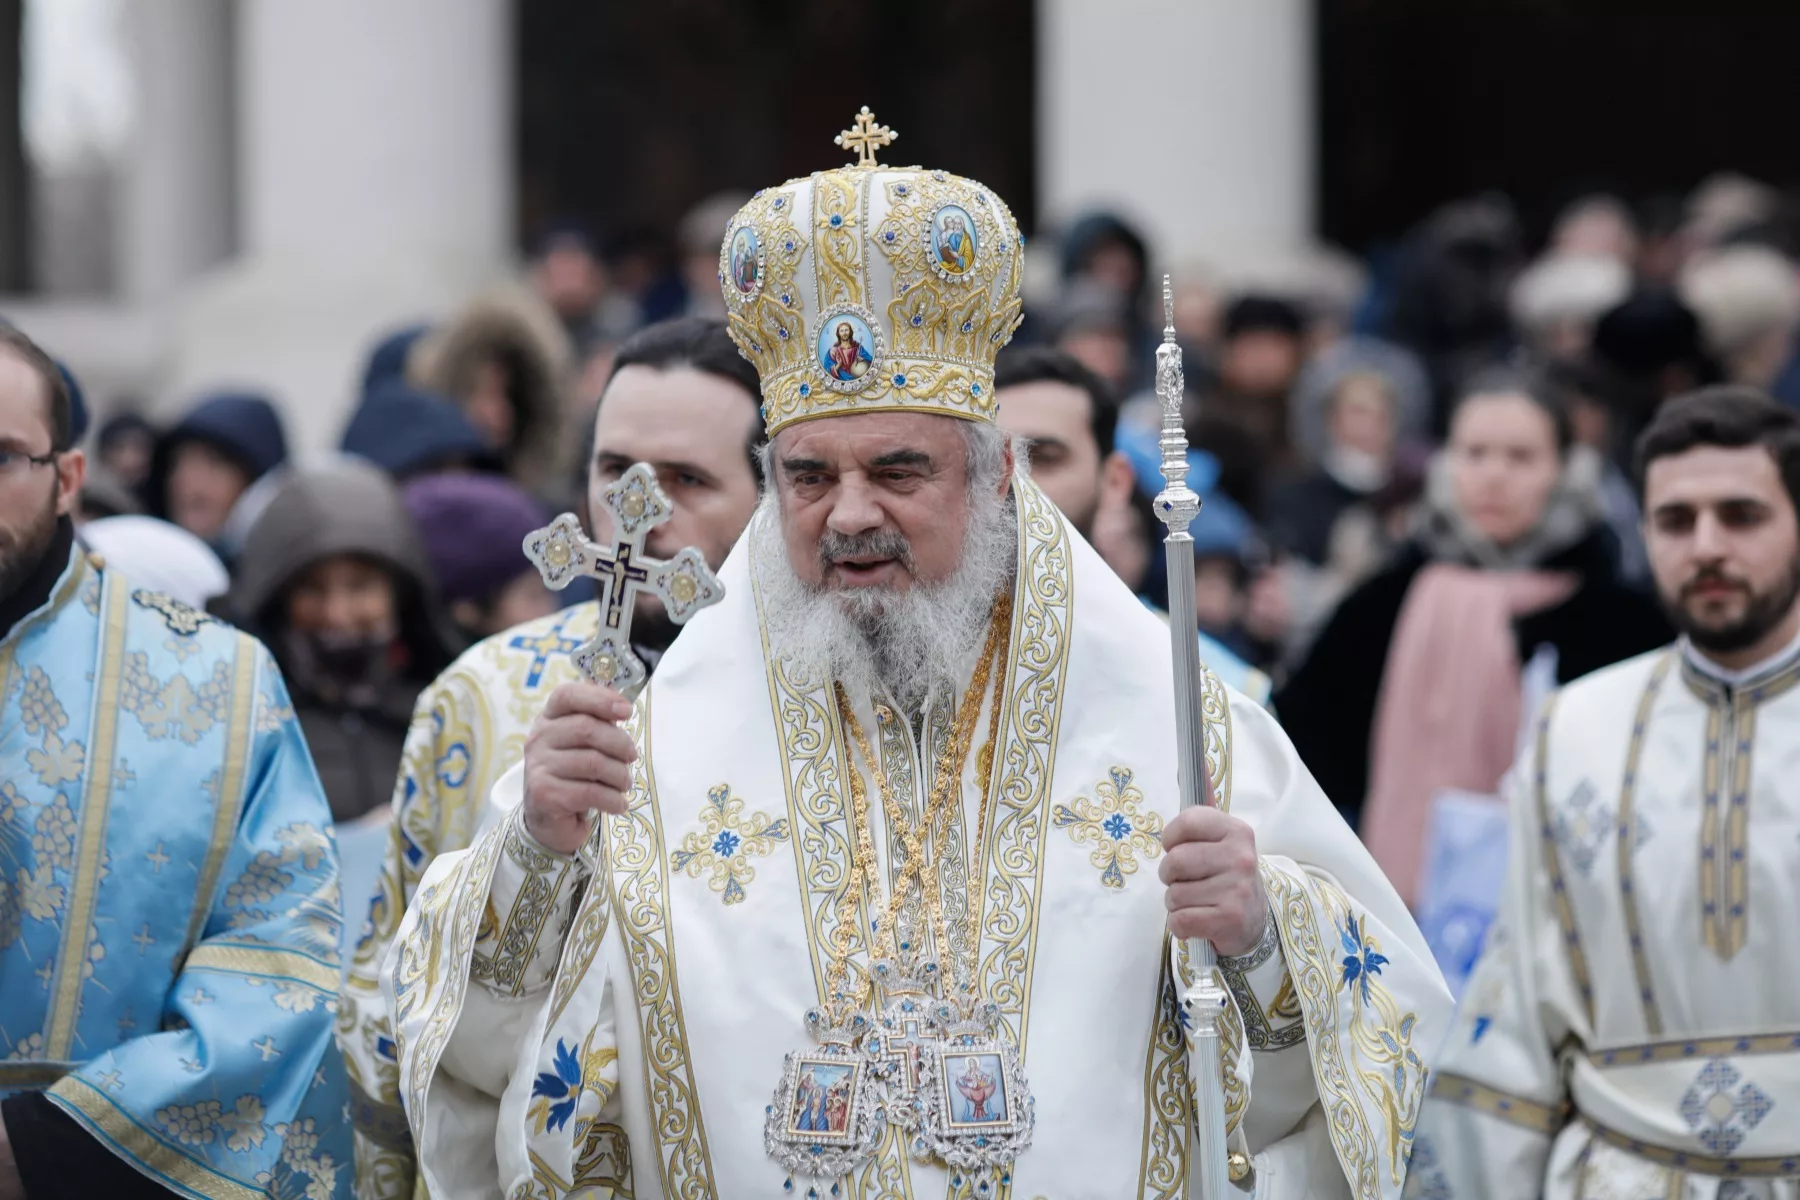 VIDEO. Mesajul Patriarhului Daniel de Înviere. “Sfintele Paşti sunt sărbătoarea iertării, a păcii şi a bucuriei”